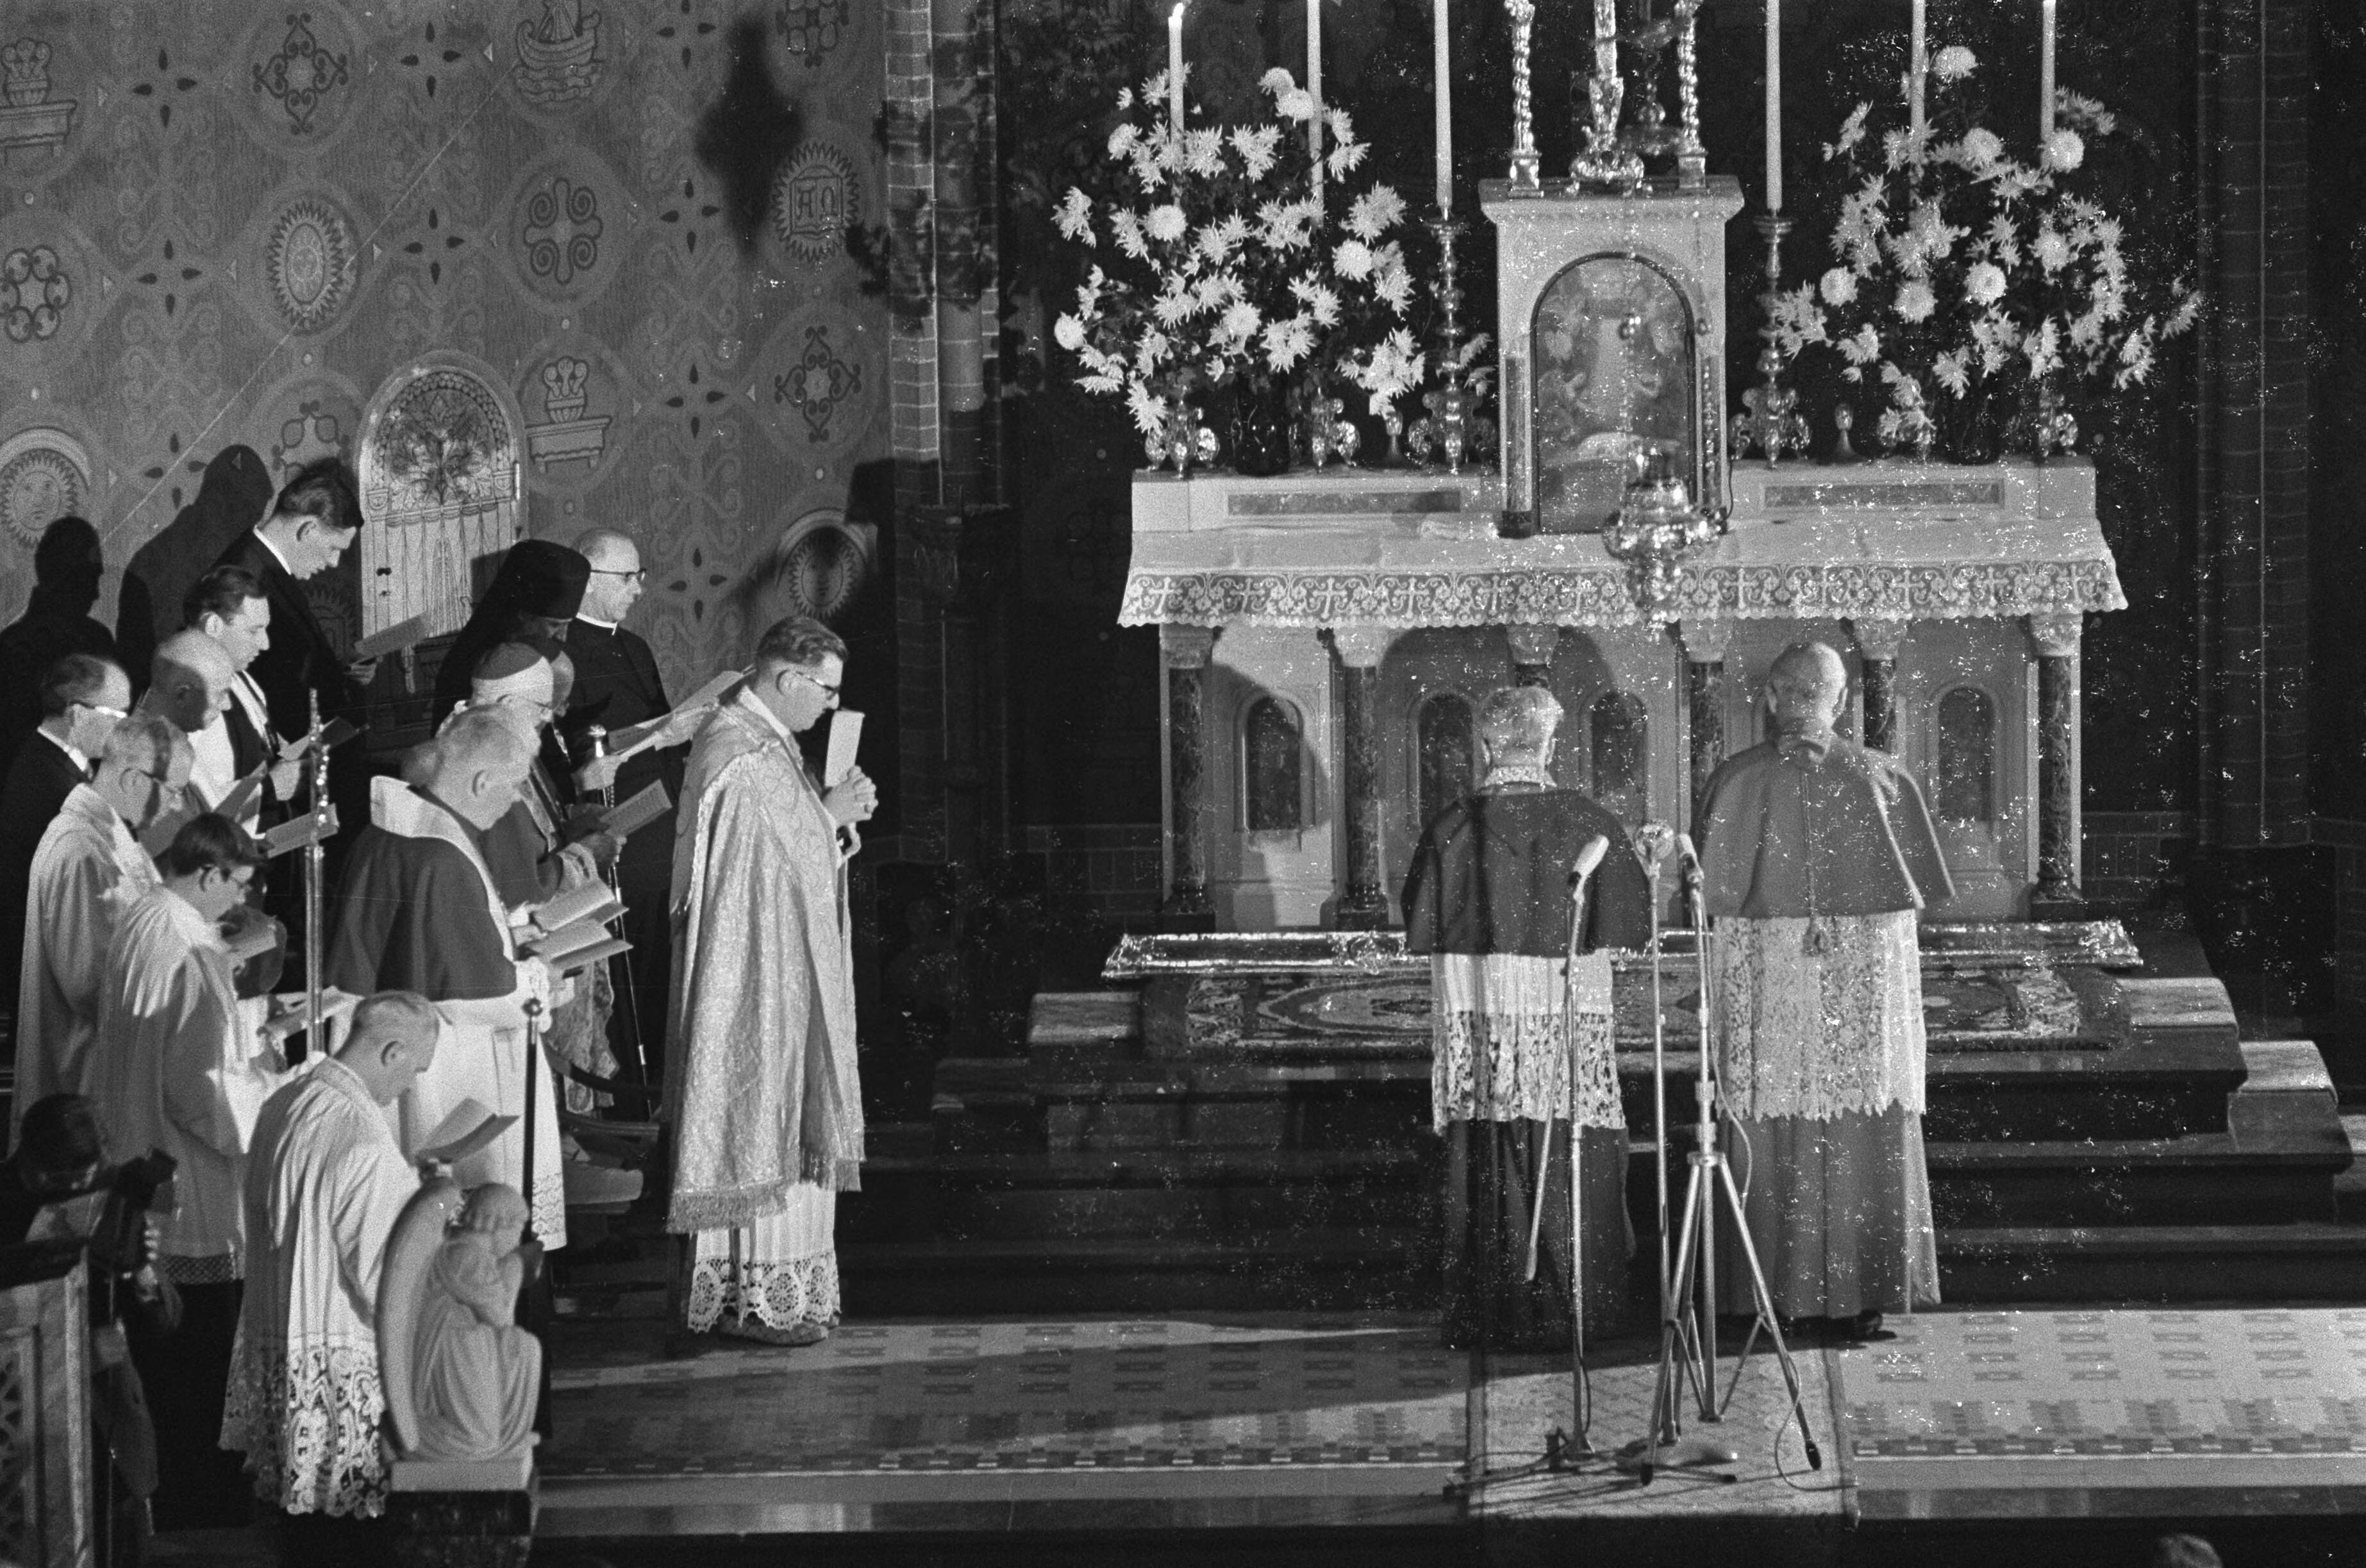 1966 - Utrecht. St. Gertrudiskathedraal. Vesper gehouden op 7 november 1966.Aartsbisschop Rinkel en Kardinaal Alfrink voor het altaar